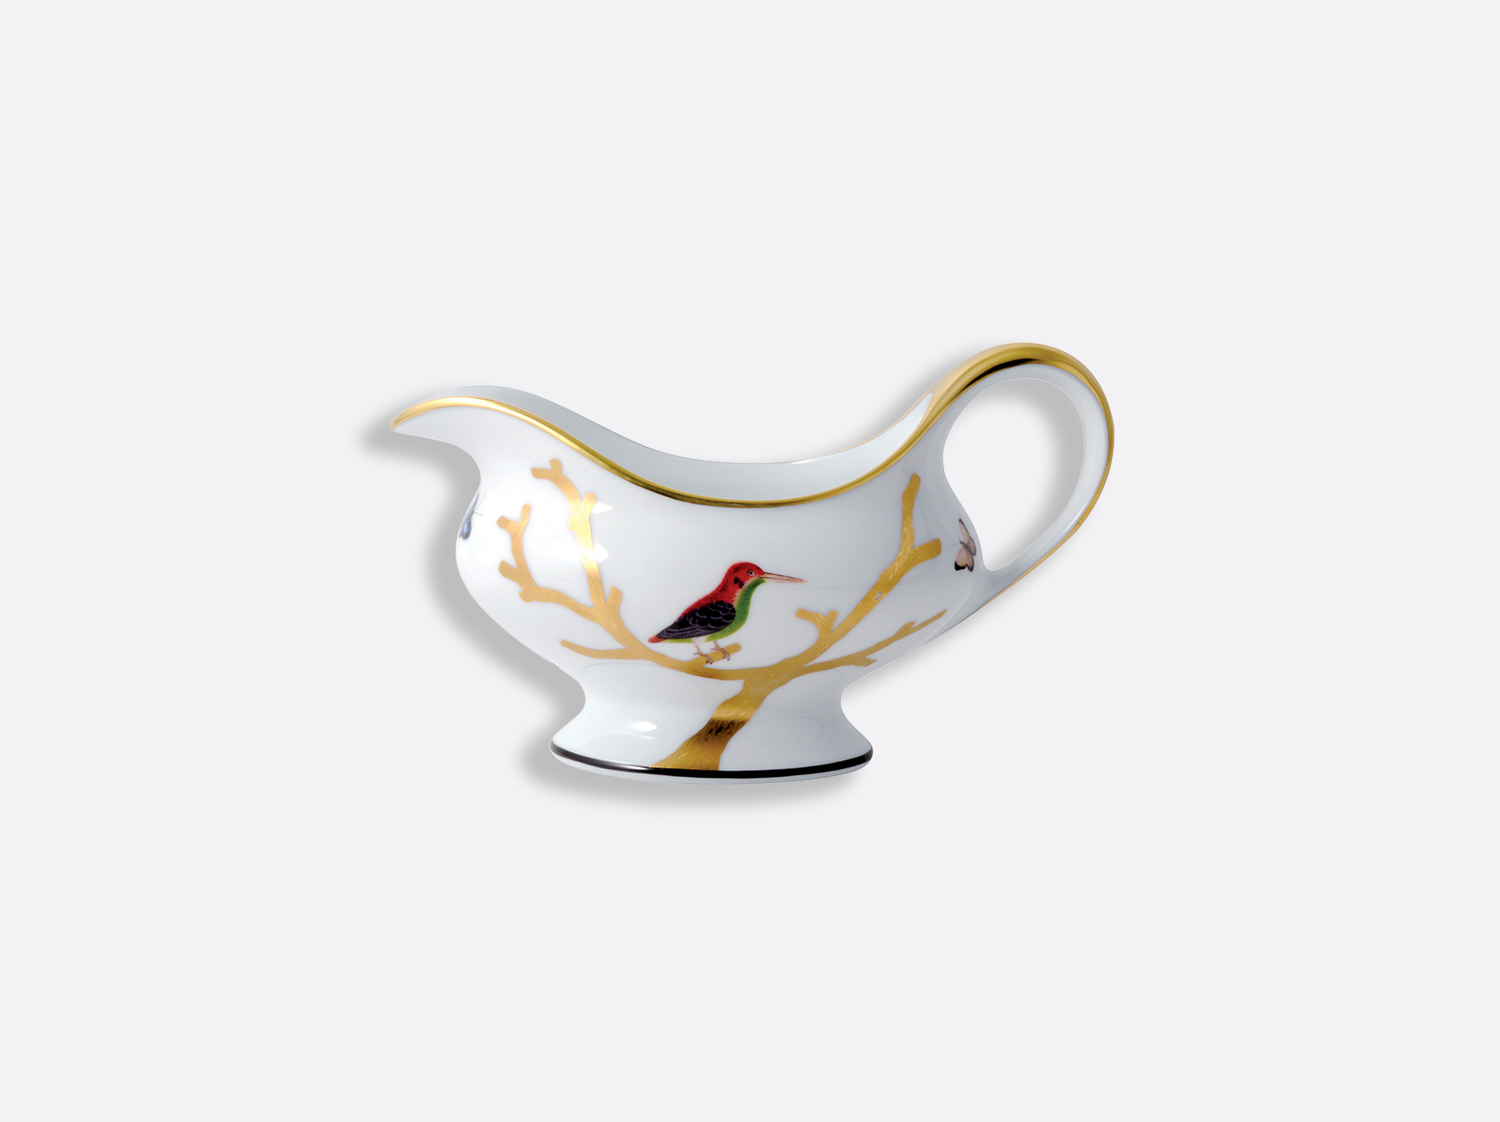 Saucière en porcelaine de la collection Aux oiseaux Bernardaud